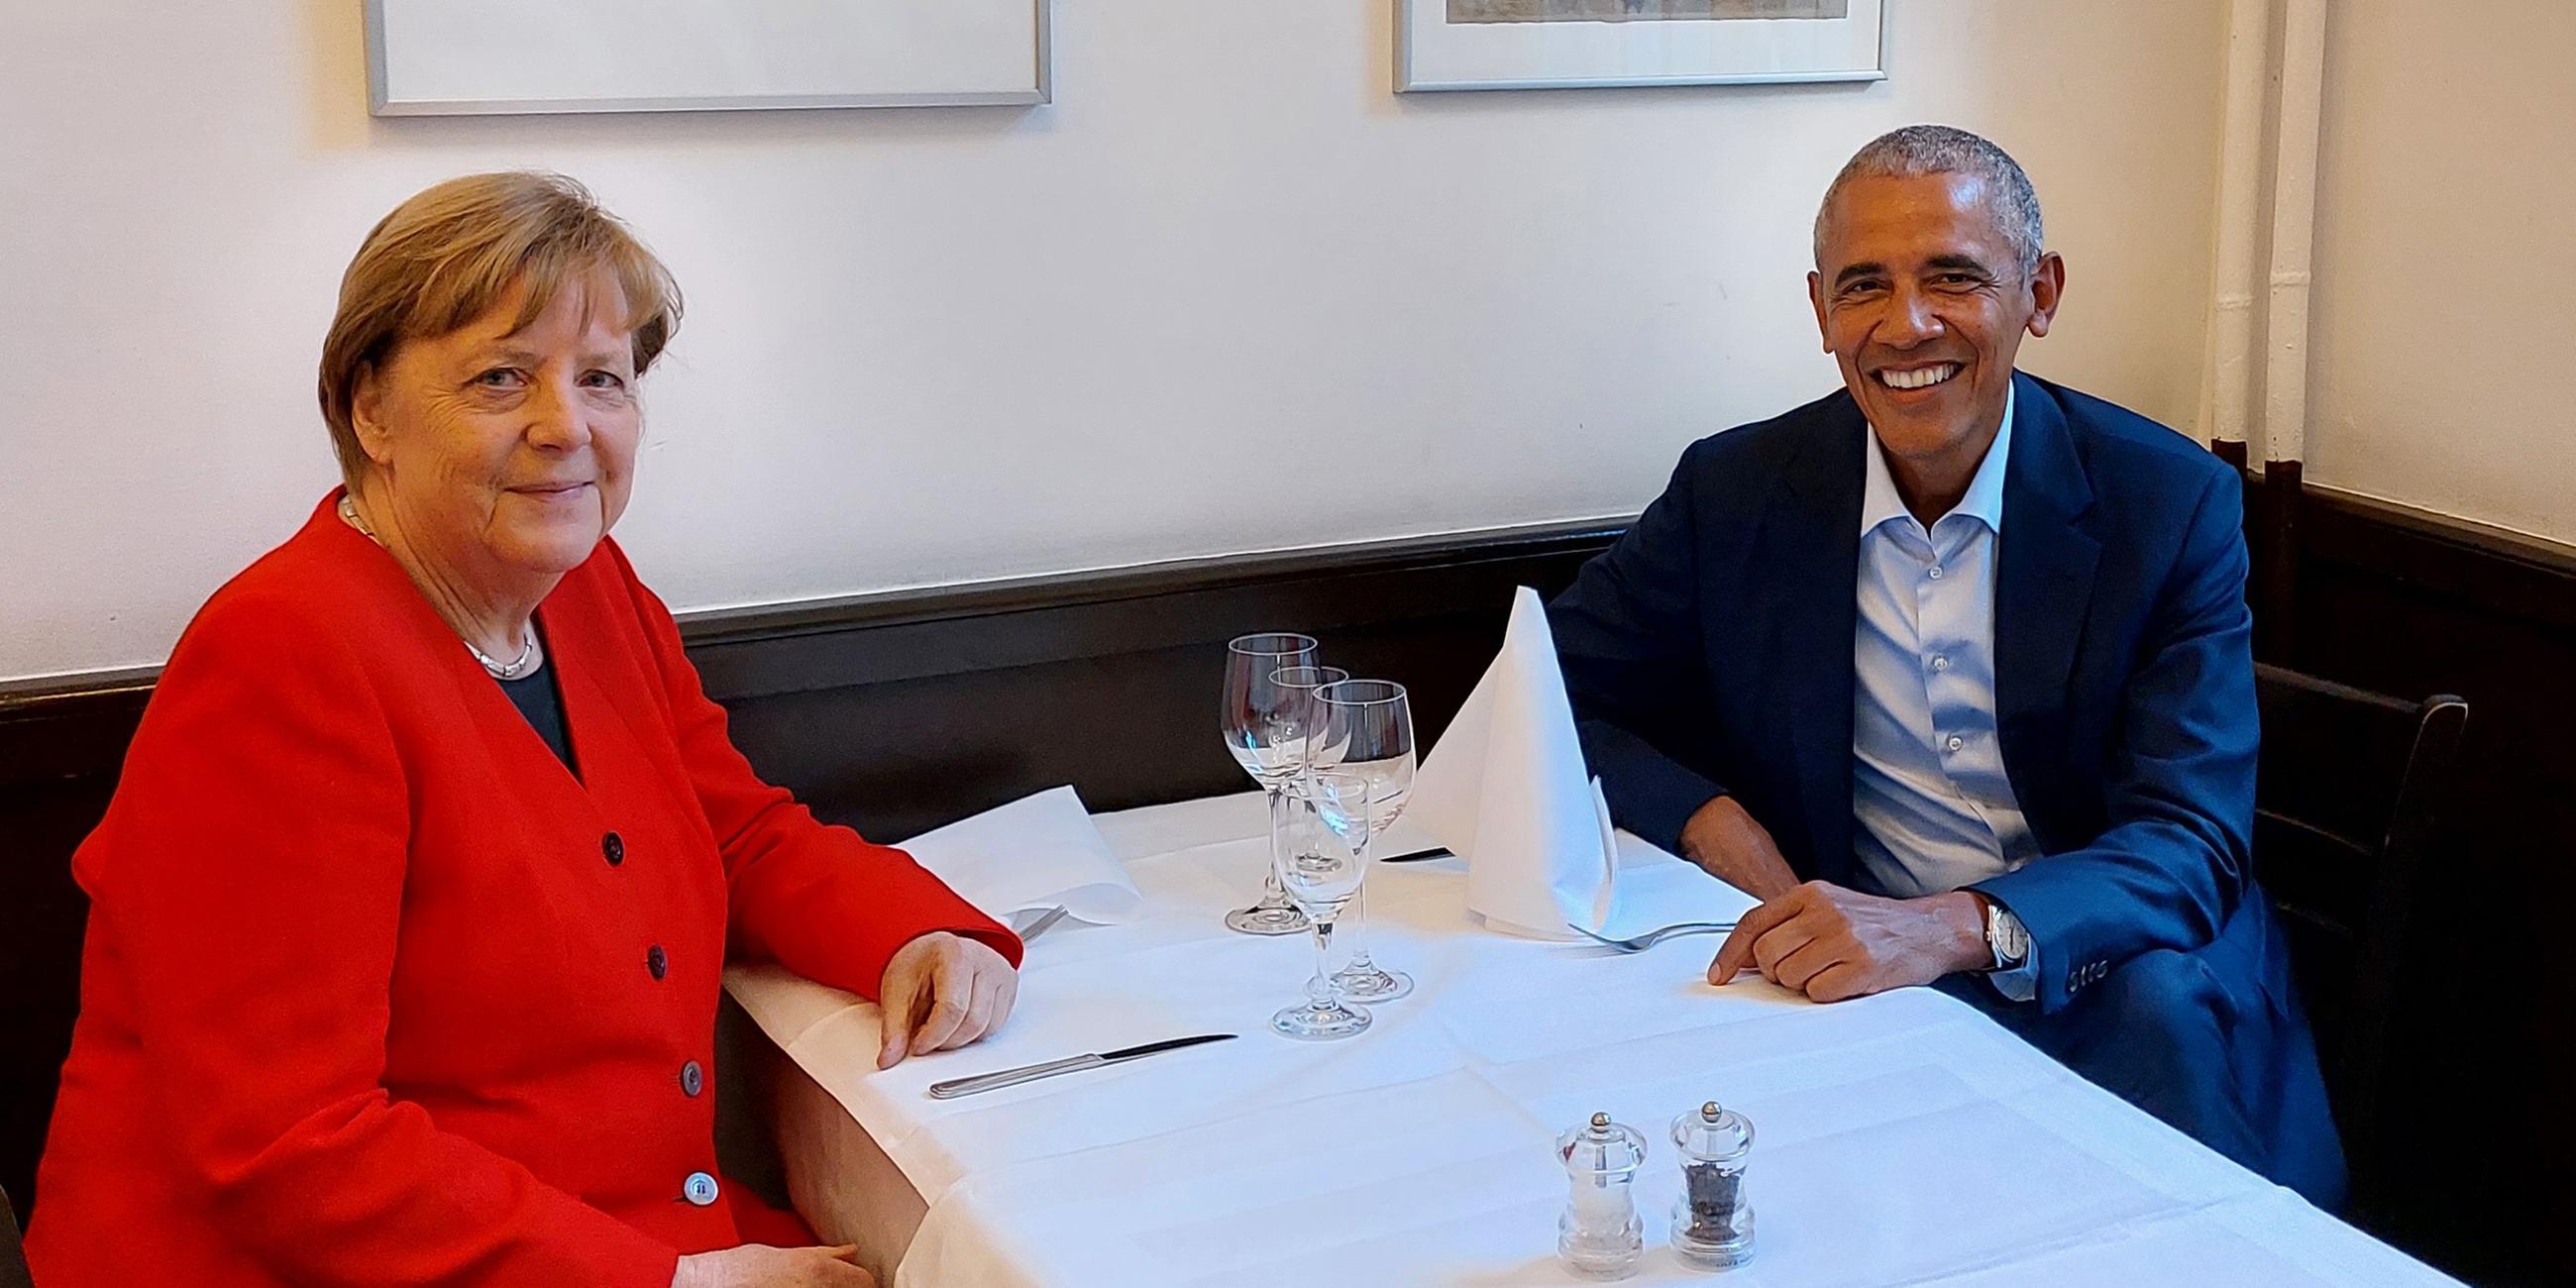 Die ehemalige Kanzlerin Angela Merkel und der ehemalige US-Präsident Barack Obama beim Abendessen in Berlin.